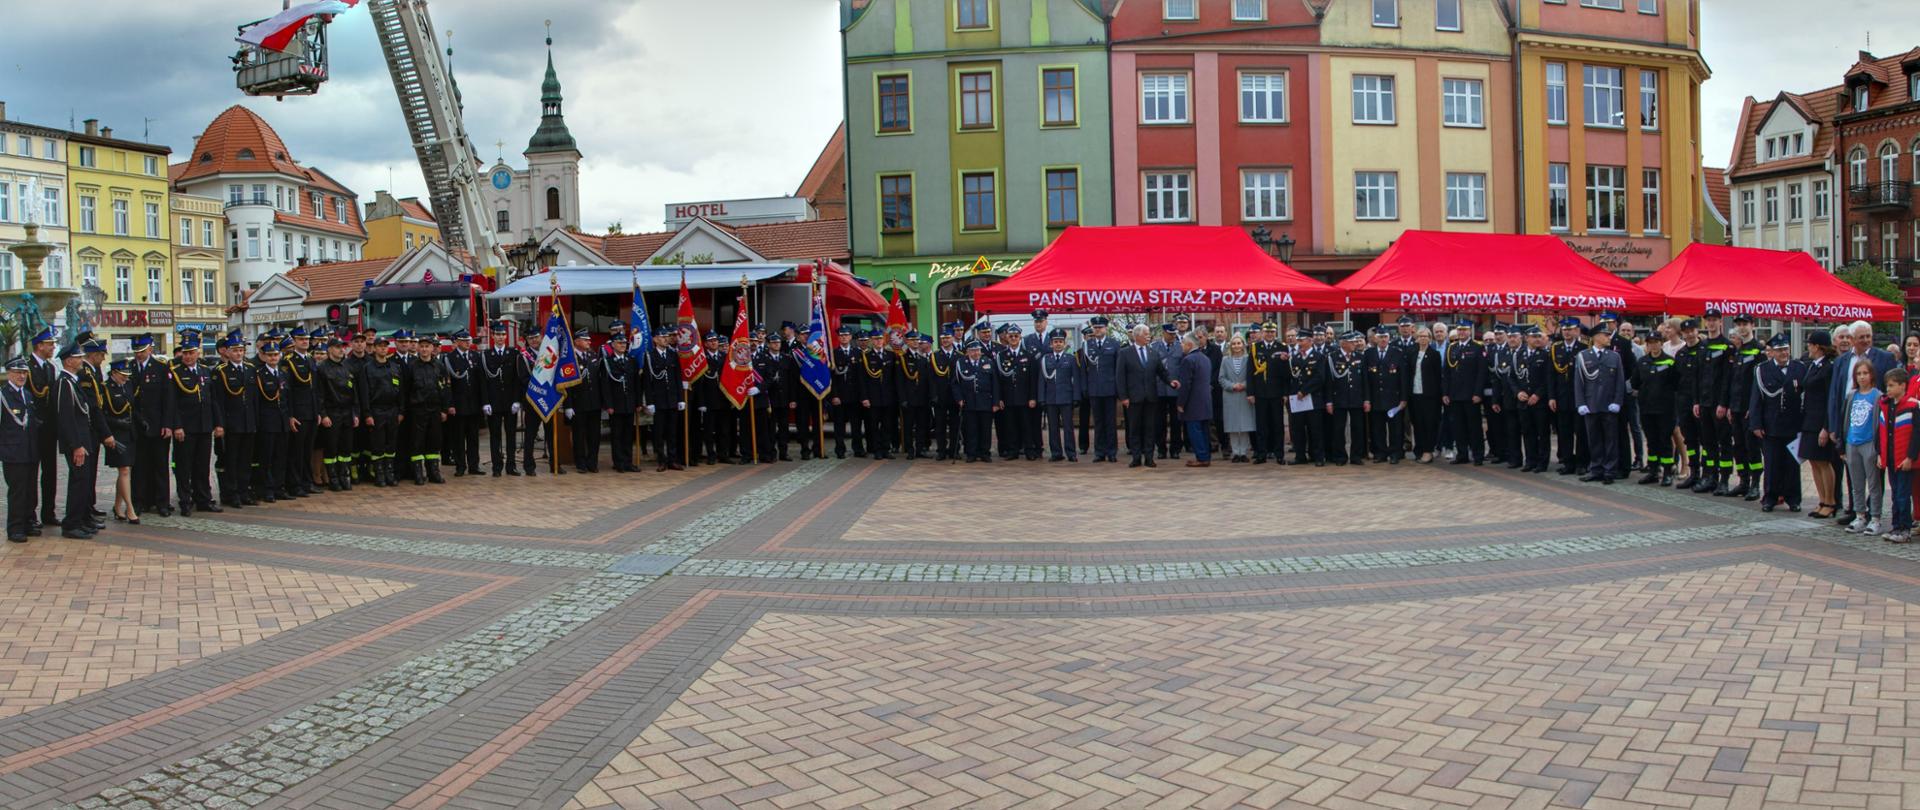 Plac Starego Synku w Chojnicach wyłożony kostką brukową. Zdjęcie grupowe przedawniające uczestników uroczystości, ponad 100 osób, część osób w mundurach. Zdjęcie panoramiczne. 